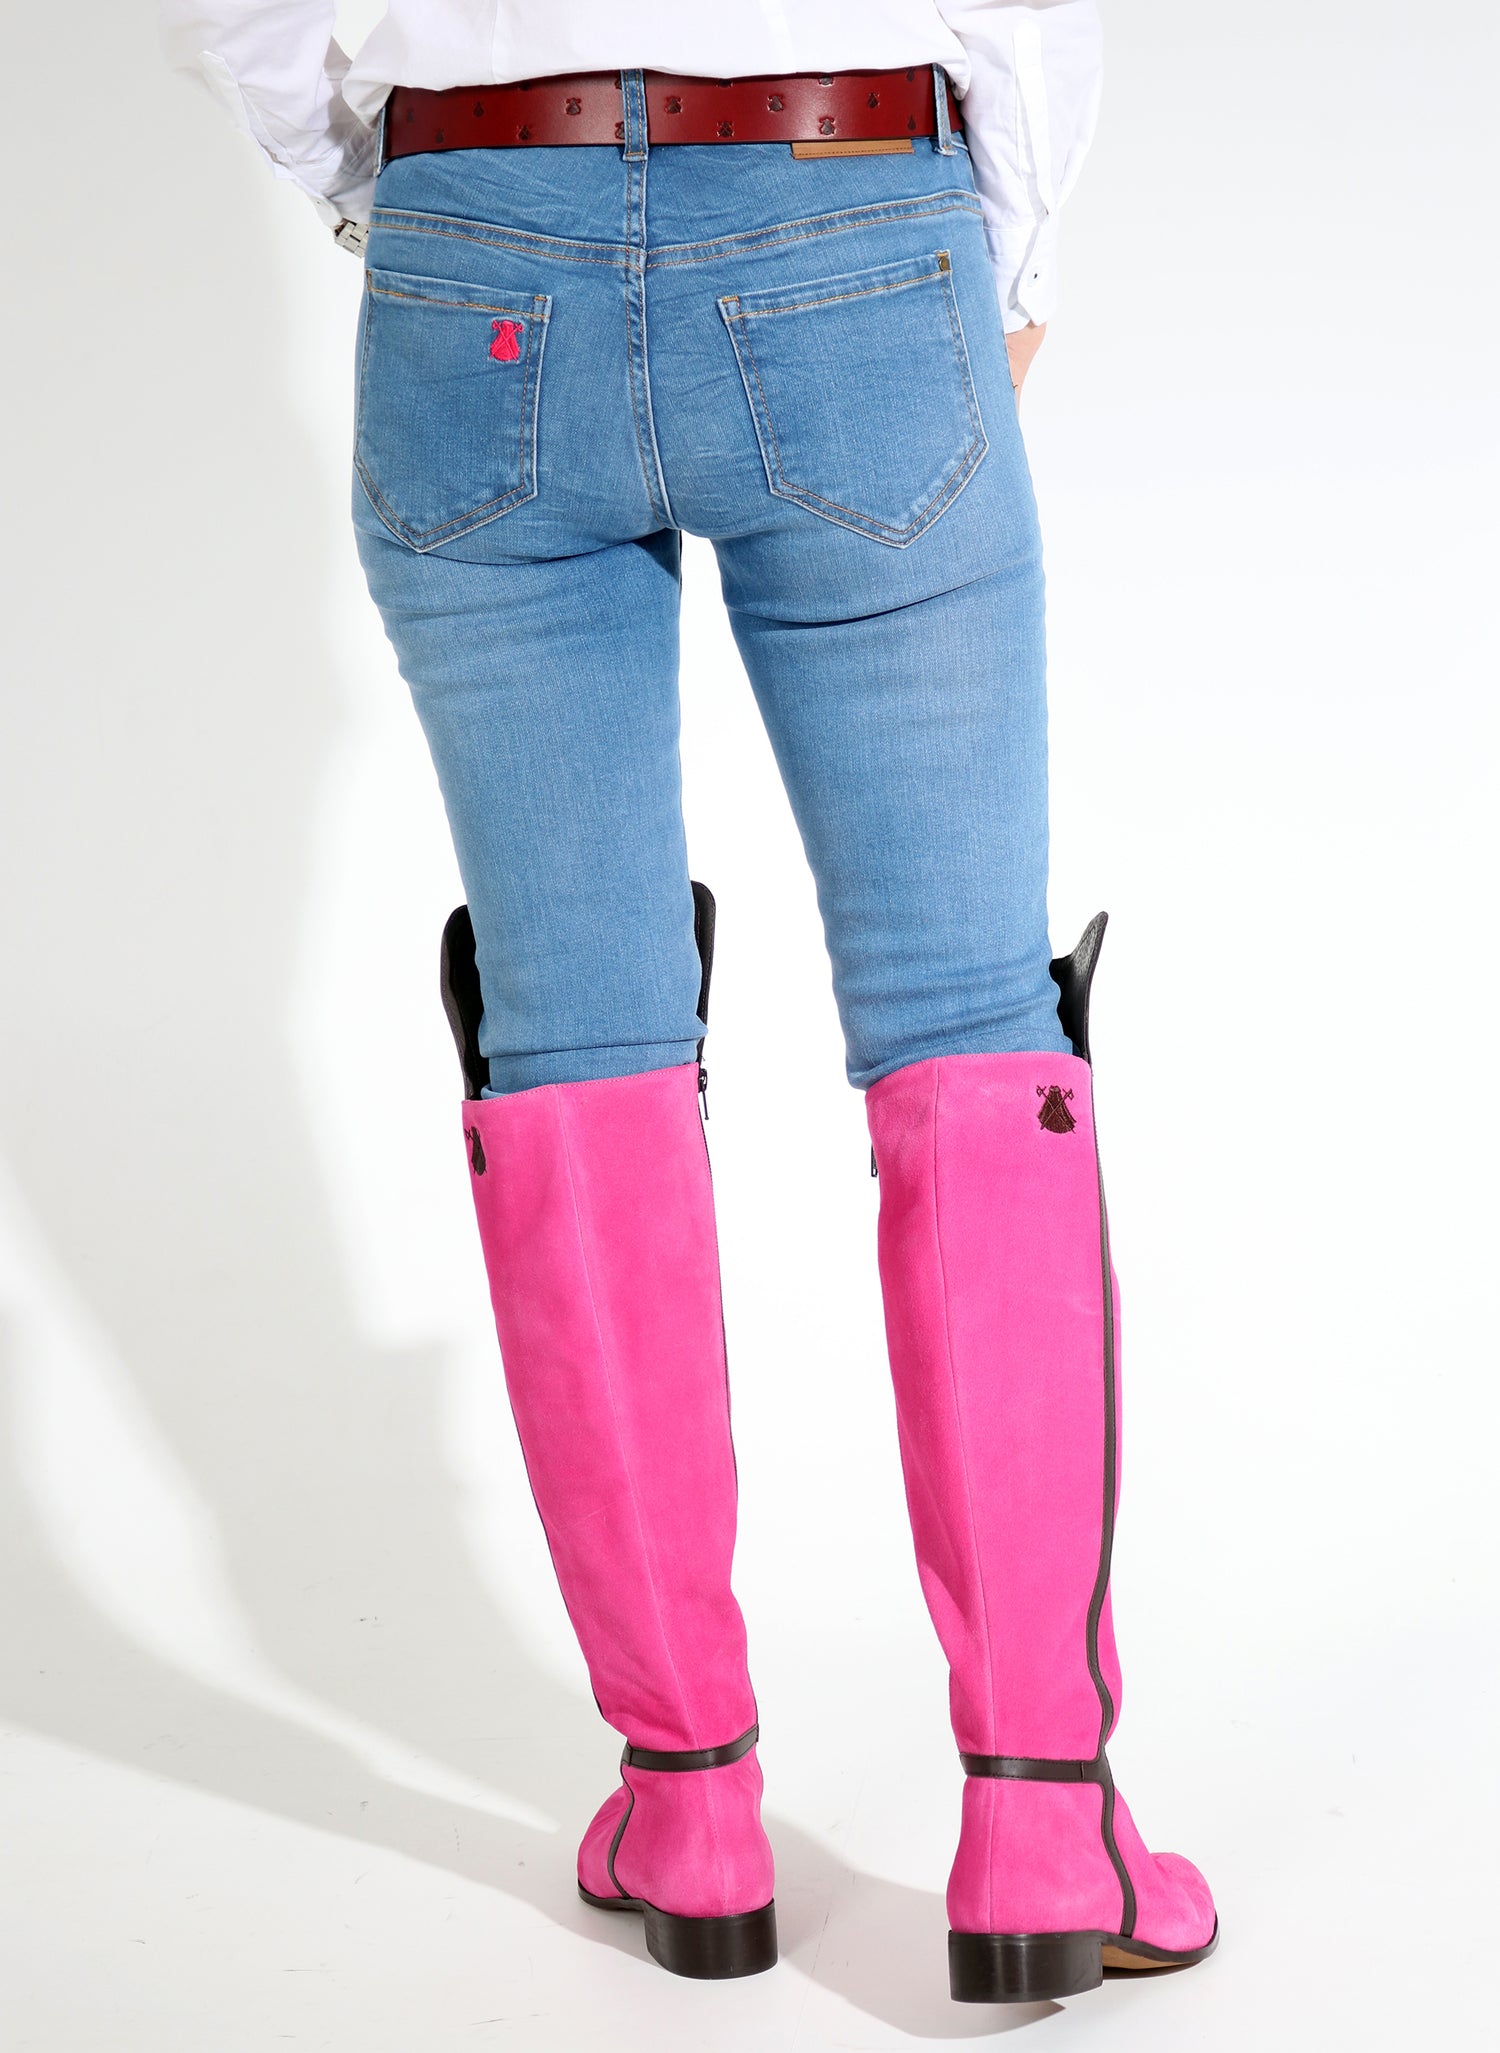 Flacher rosa Damen-Overknee-Stiefel